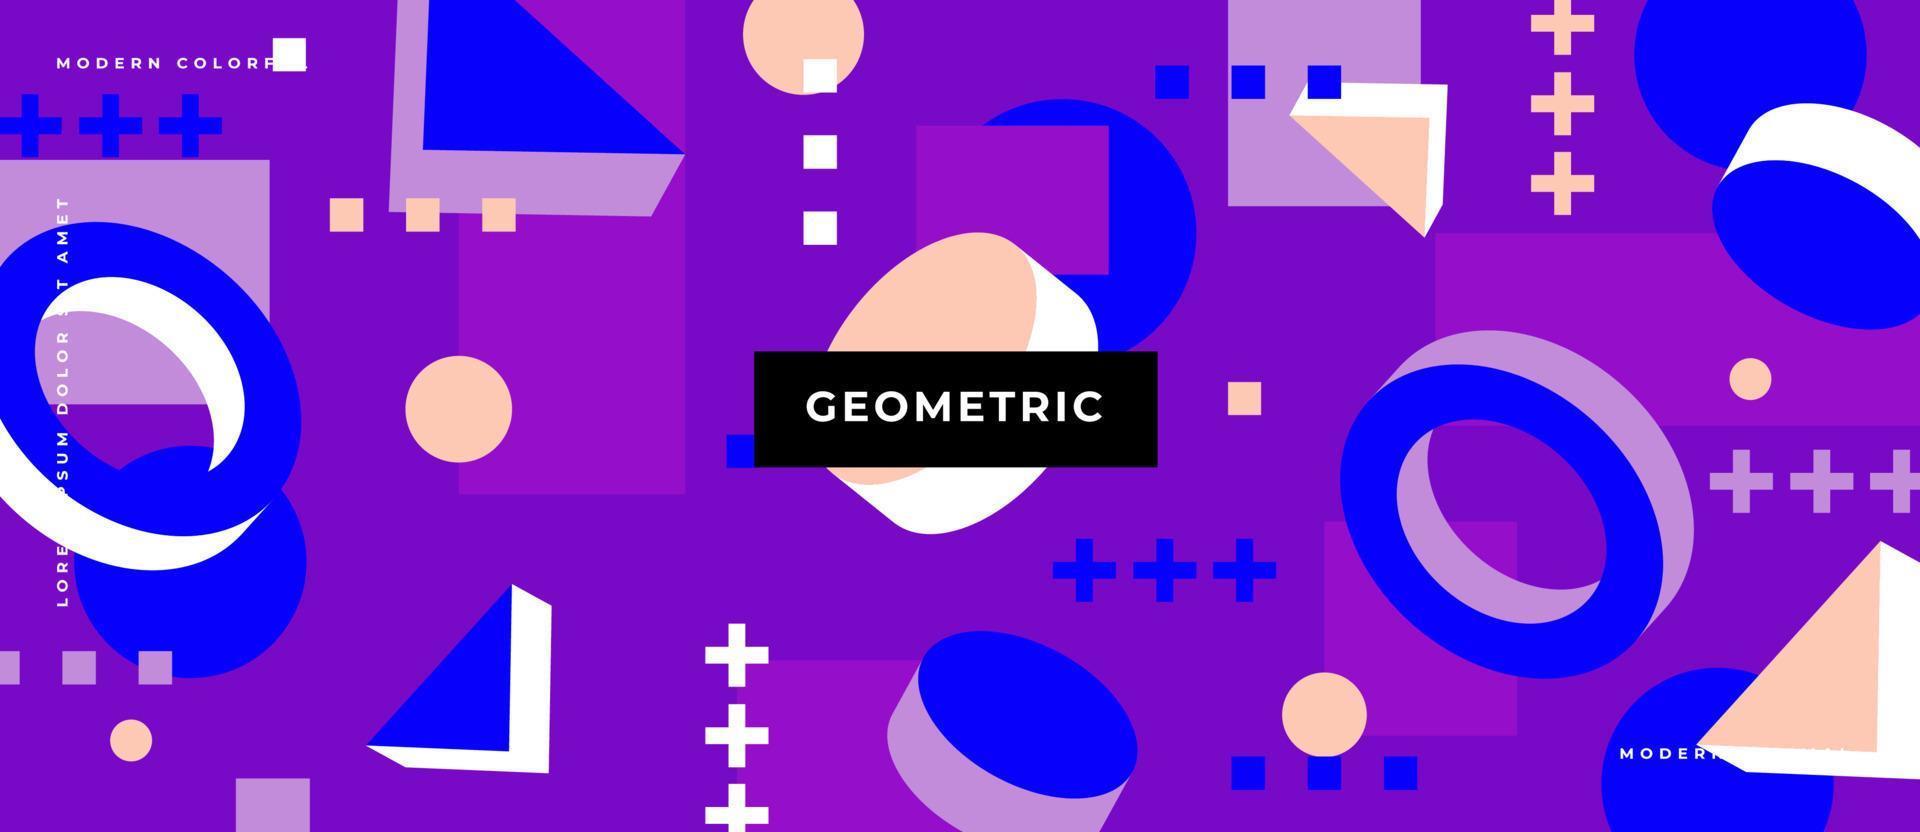 flache helle bunte 3d animierte Form. Geometrische Form im Memphis-Stil, Kreis, Dreieck, Quadrat auf violettem Hintergrund. vektor